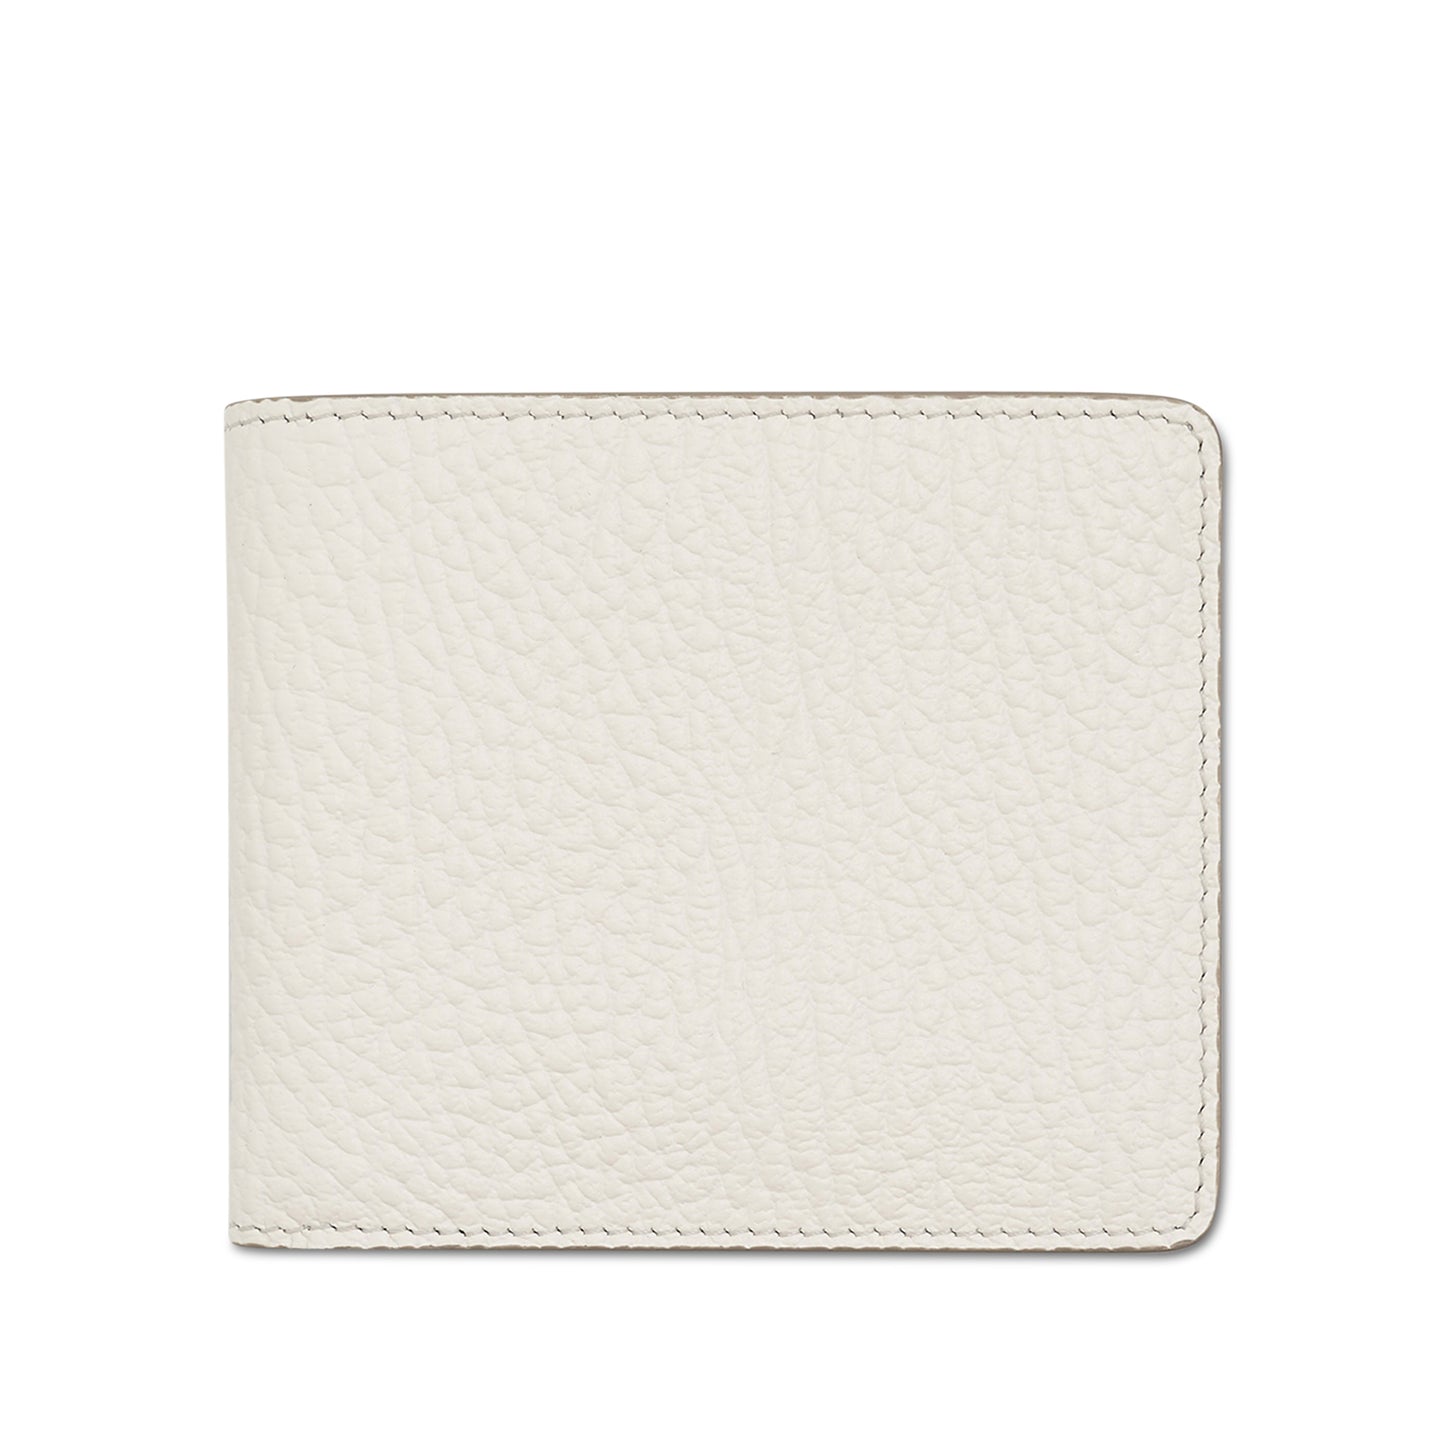 4 Stitch Bifold Wallet in White